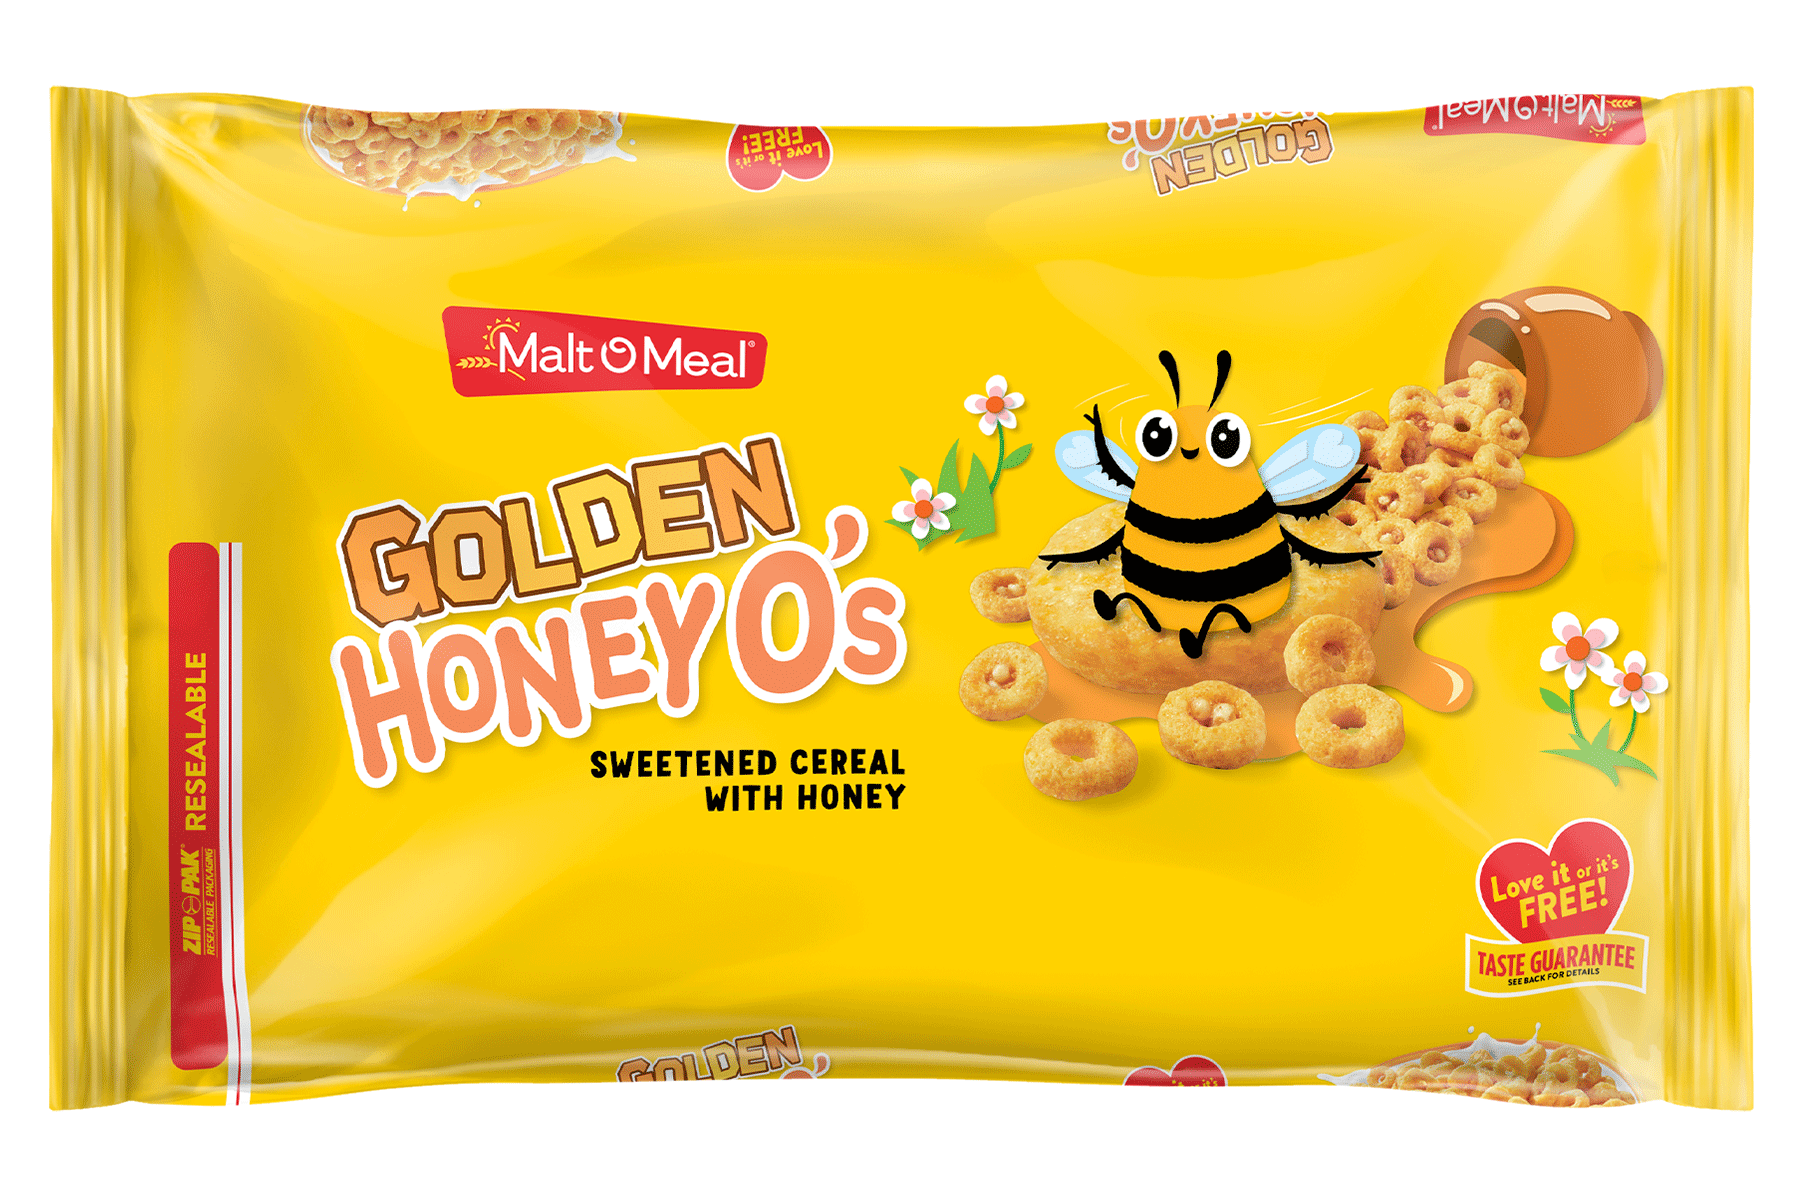 New Malt-O-Meal Golden Honey Os Cereal Bag